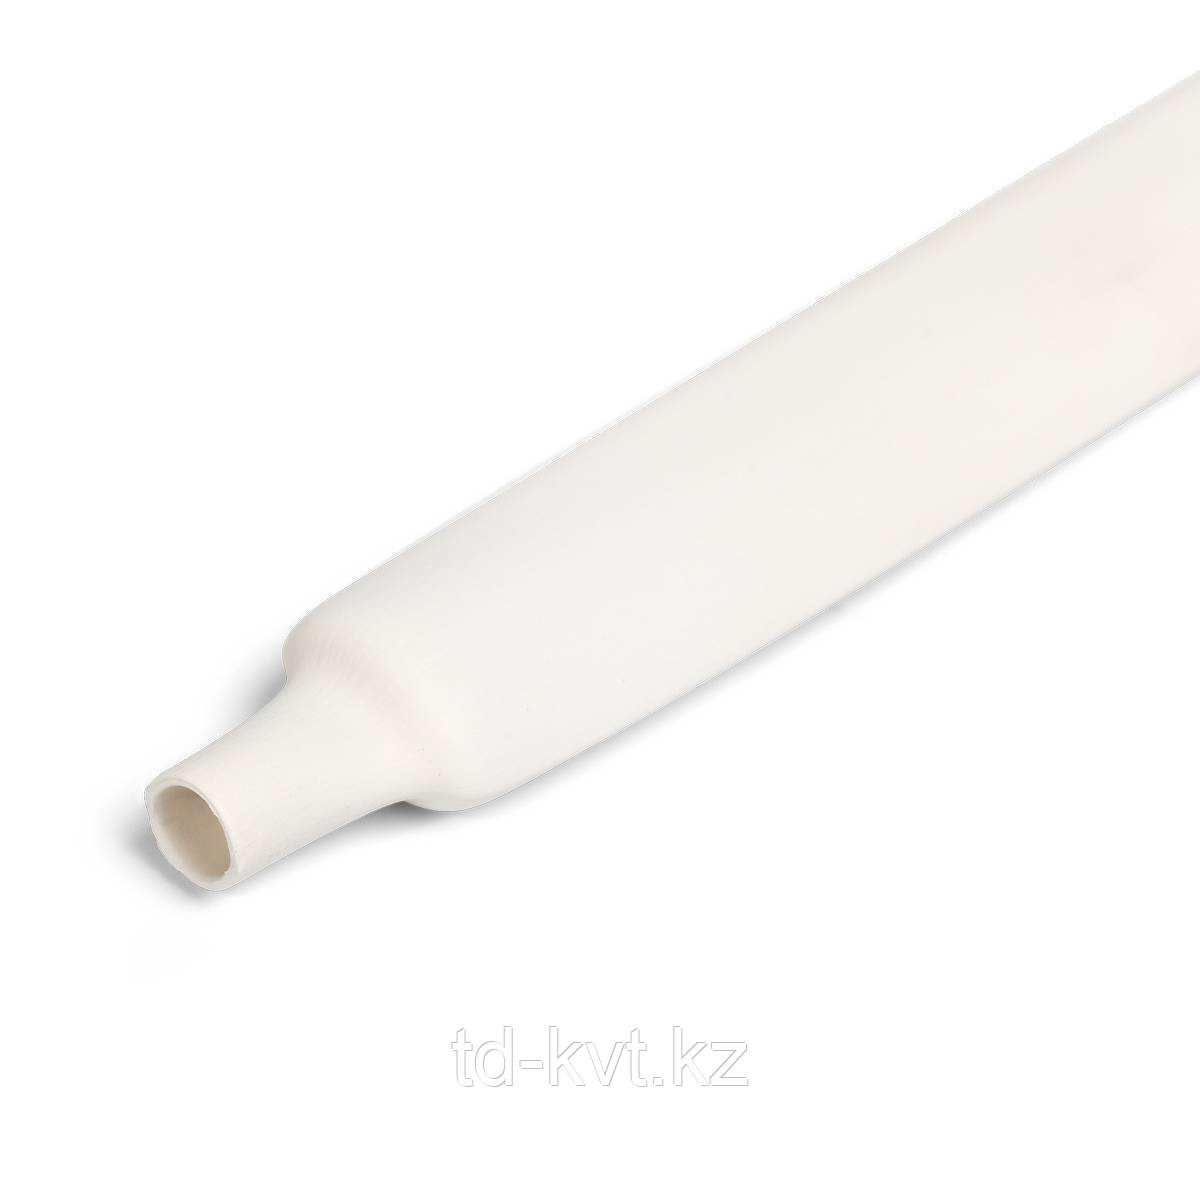 Цветная термоусадочная трубка с коэффициентом усадки 2:1 ТУТнг-4/2, бел